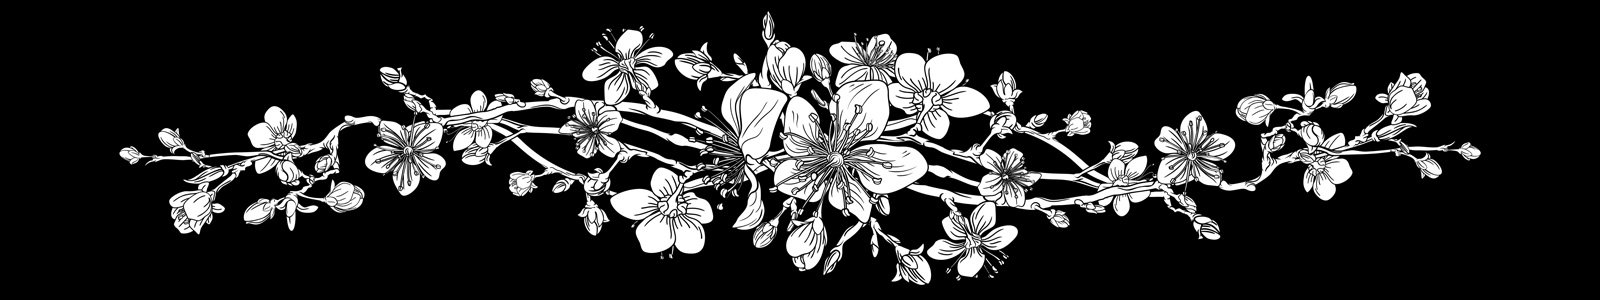 №7410 - Цветение сакуры на черном фоне